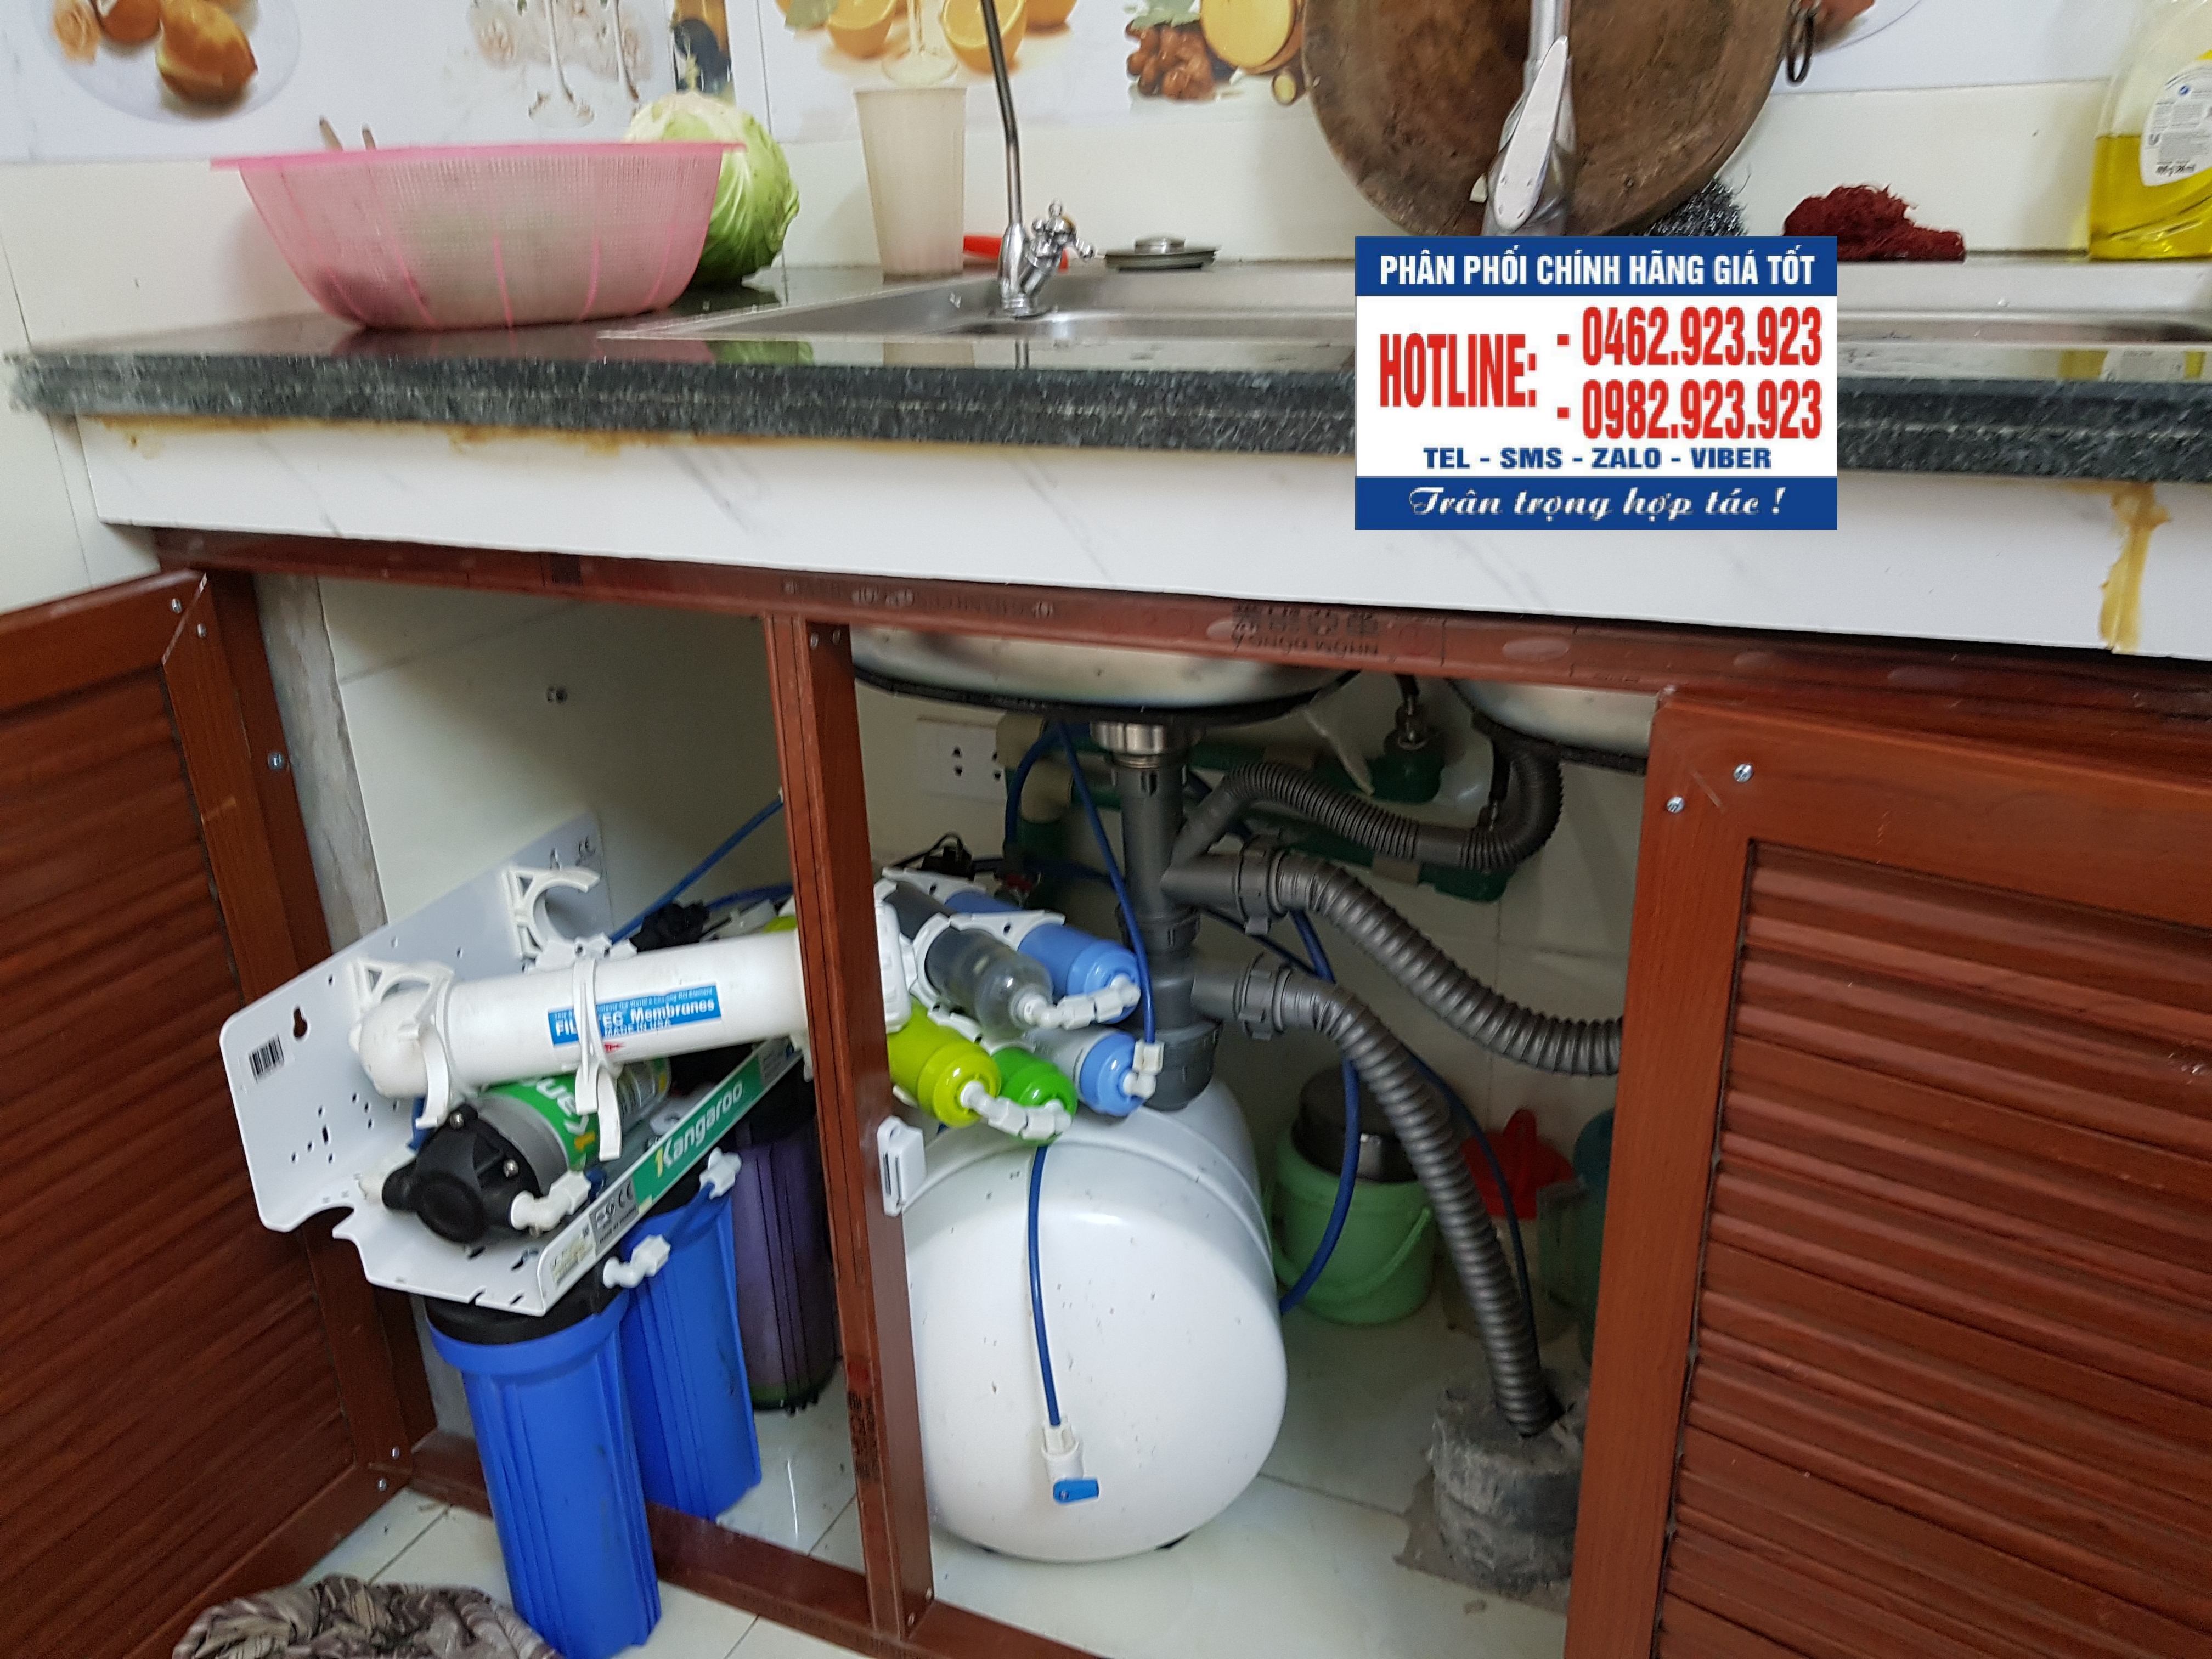 Sửa máy lọc nước Kangaroo tại nhà a Cường tổ 12 Đồng Mai Hà Đông Hà Nội 